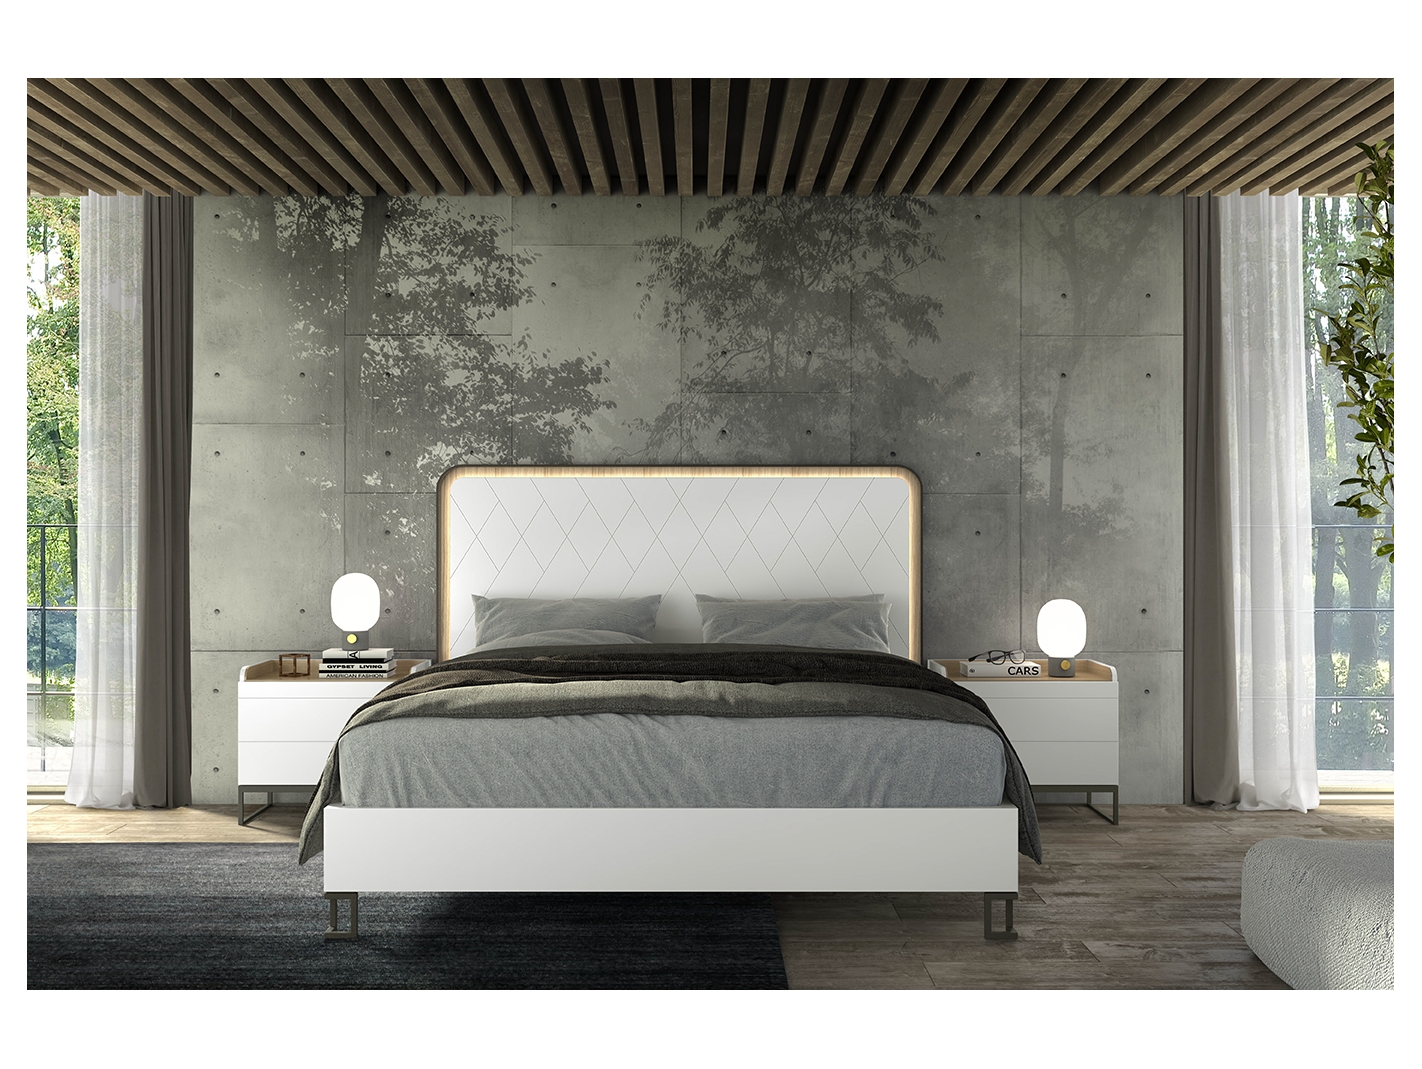 hermosa Rafflesia Arnoldi Orgulloso Composición dormitorio cama, mesitas color lacado blanco y roble  blanqueado. Merkamueble